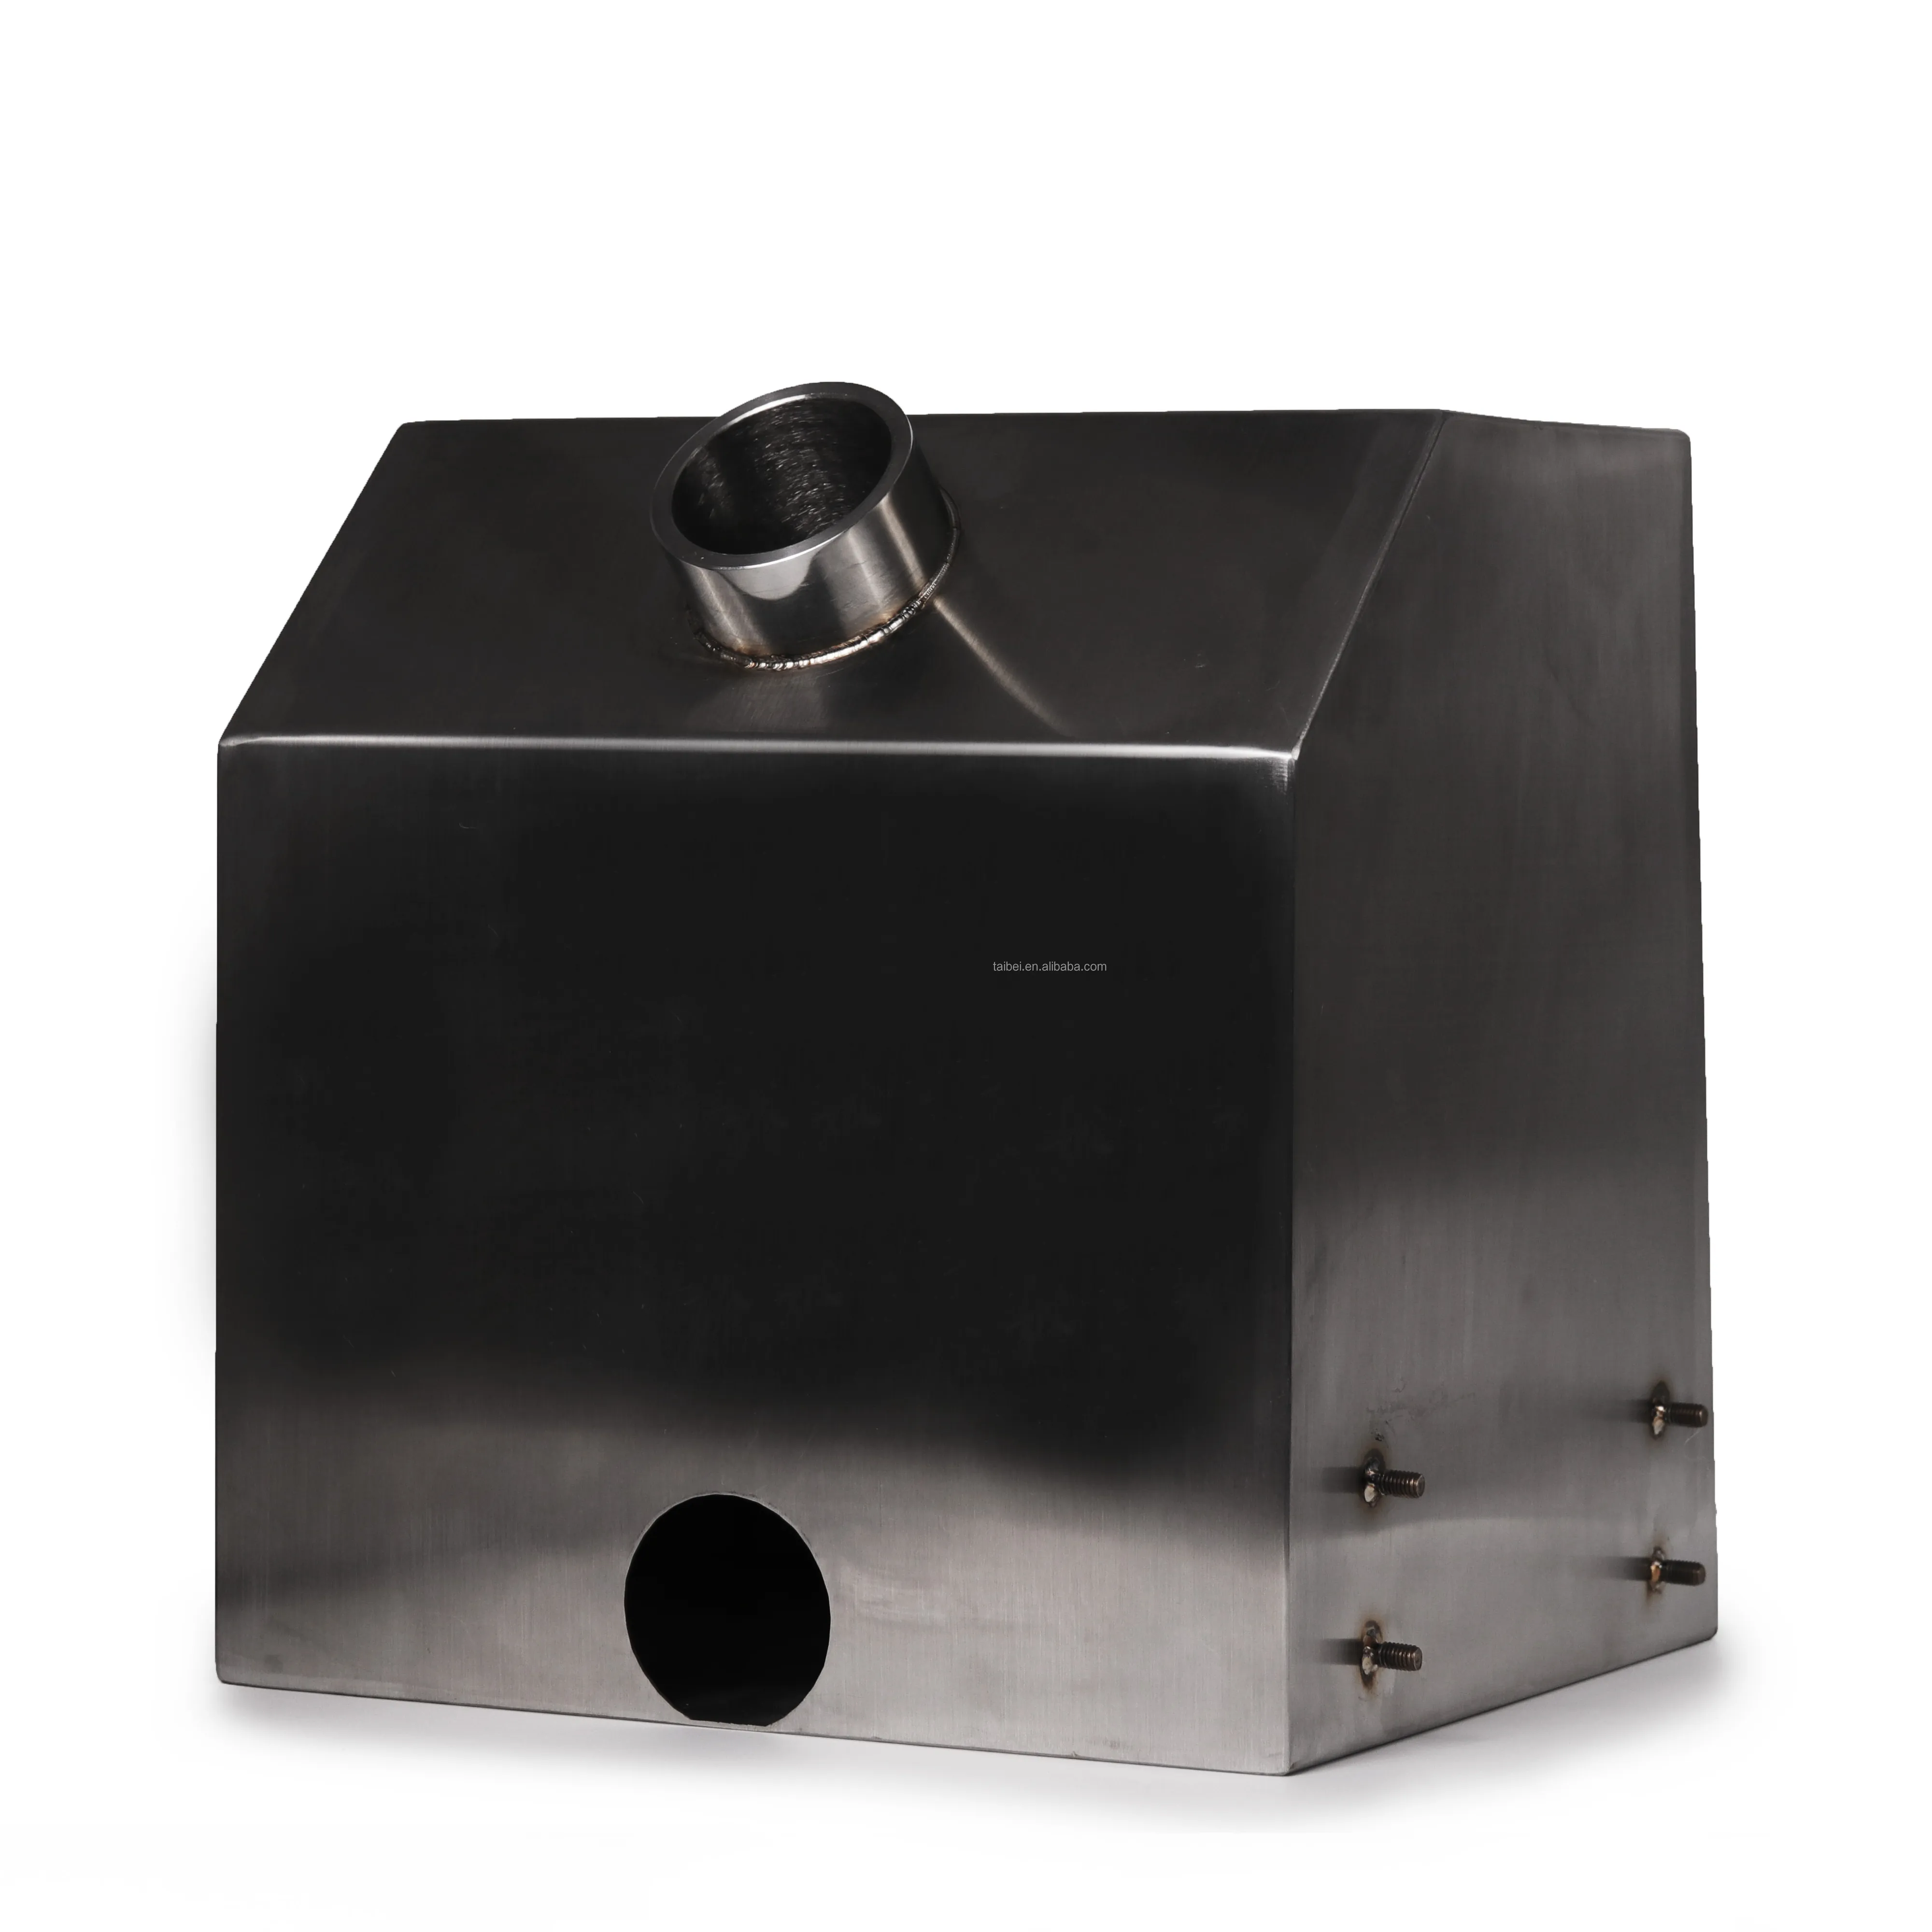 Caja de Metal de hoja OEM, caja inoxidable personalizada, doblado y soldadura de corte láser como cubierta de iluminación, soporte de montaje